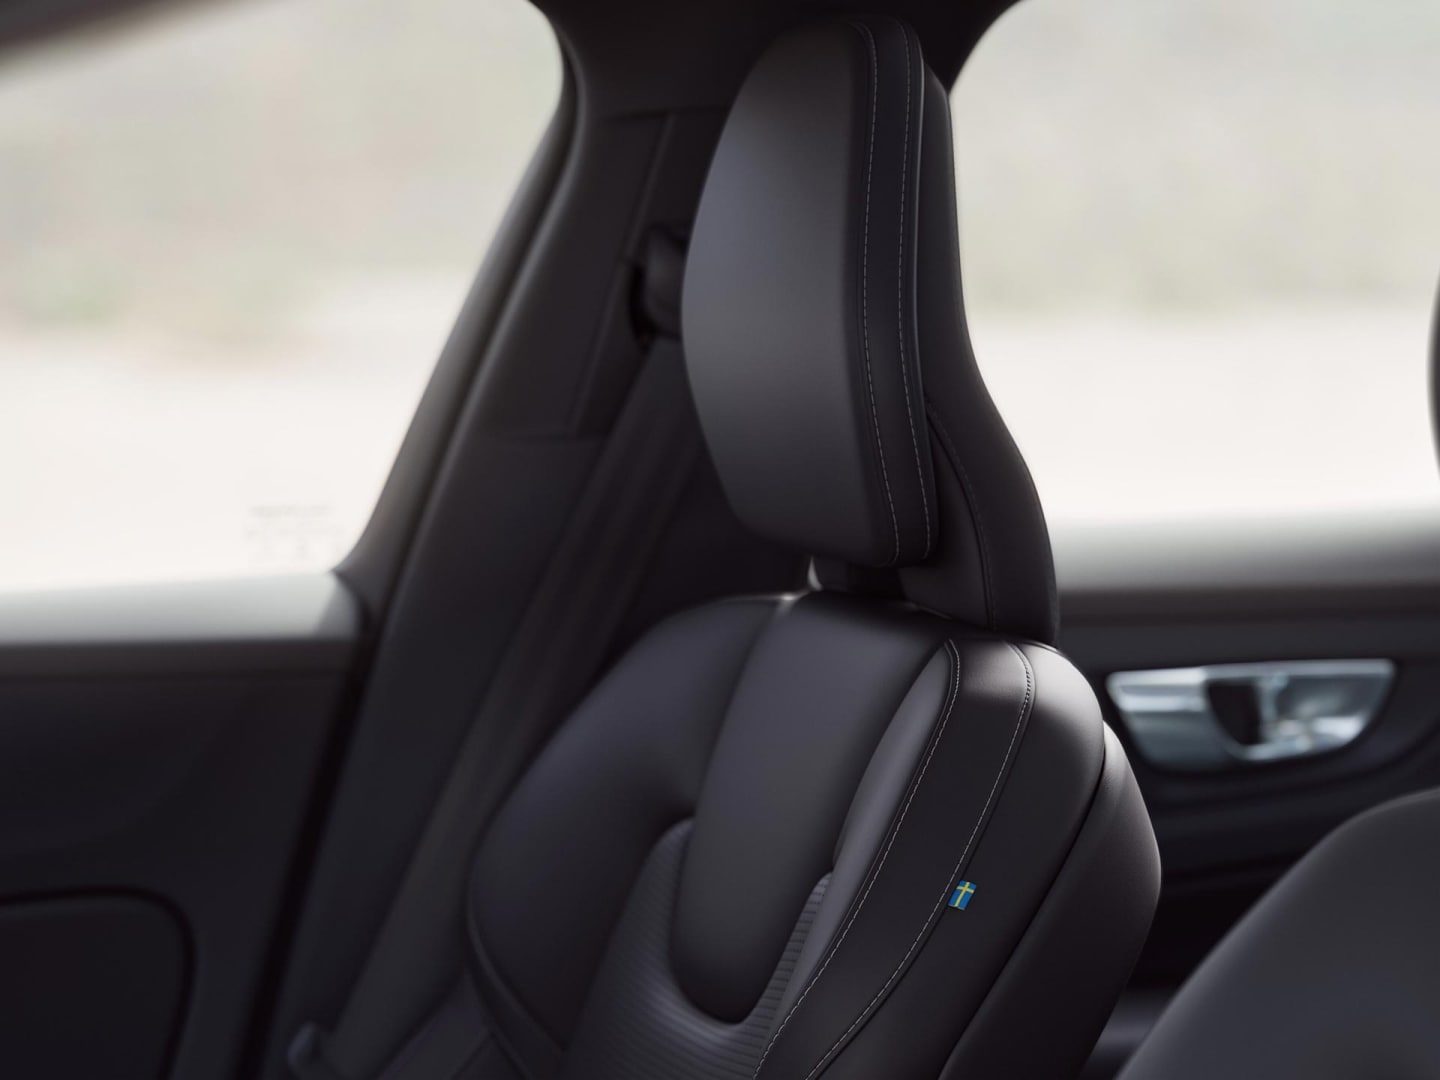 De passagiers- en bestuurdersstoel van de plug-in hybride Volvo V60 in antraciet nappaleer met ventilatie.